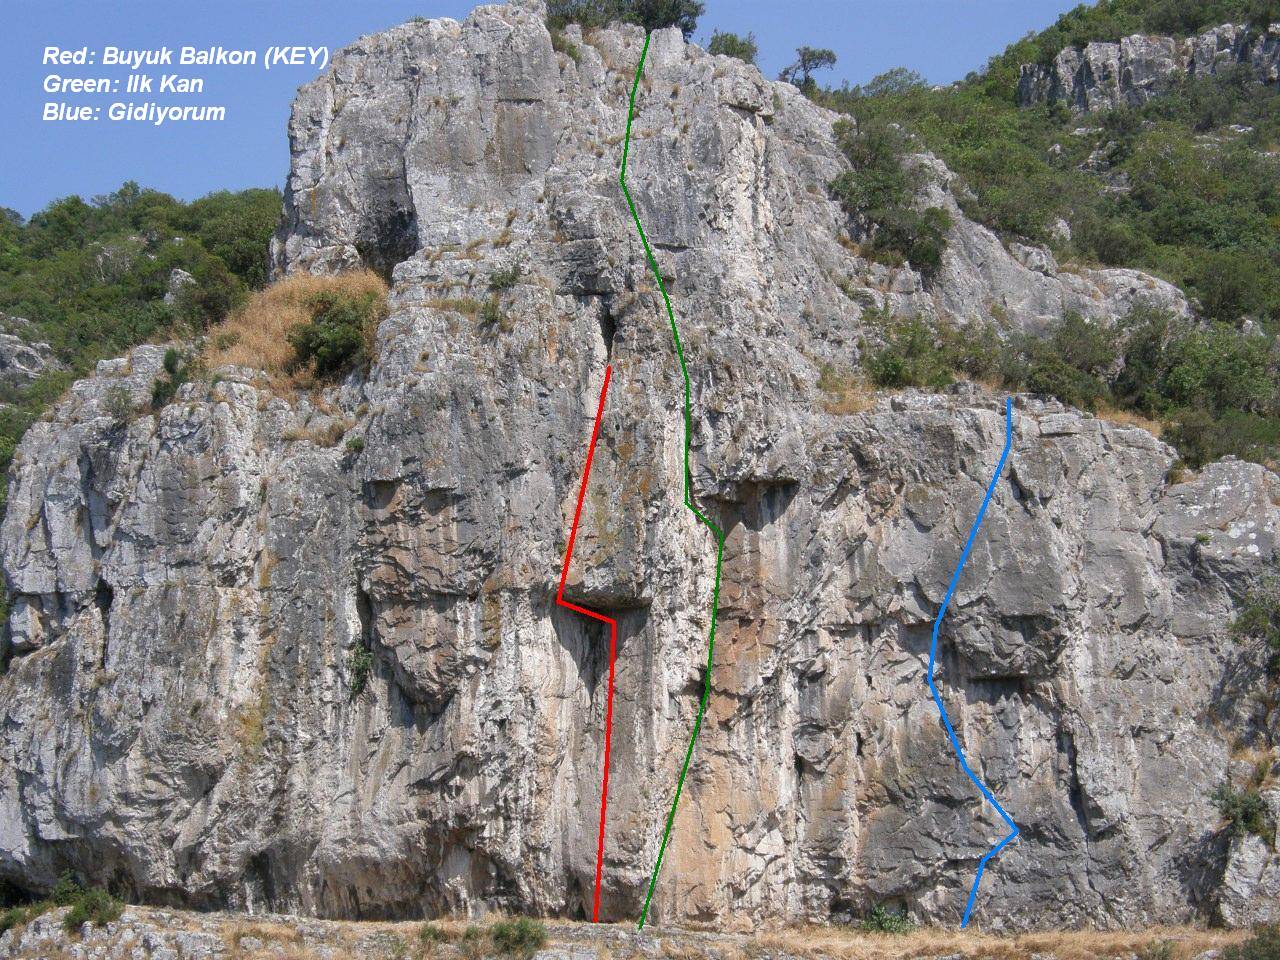 David ve Emre’nin tırmanış iştahlarını kabartan çizimde yeşil renkle belirtilmiş doğal hat: İlk kan